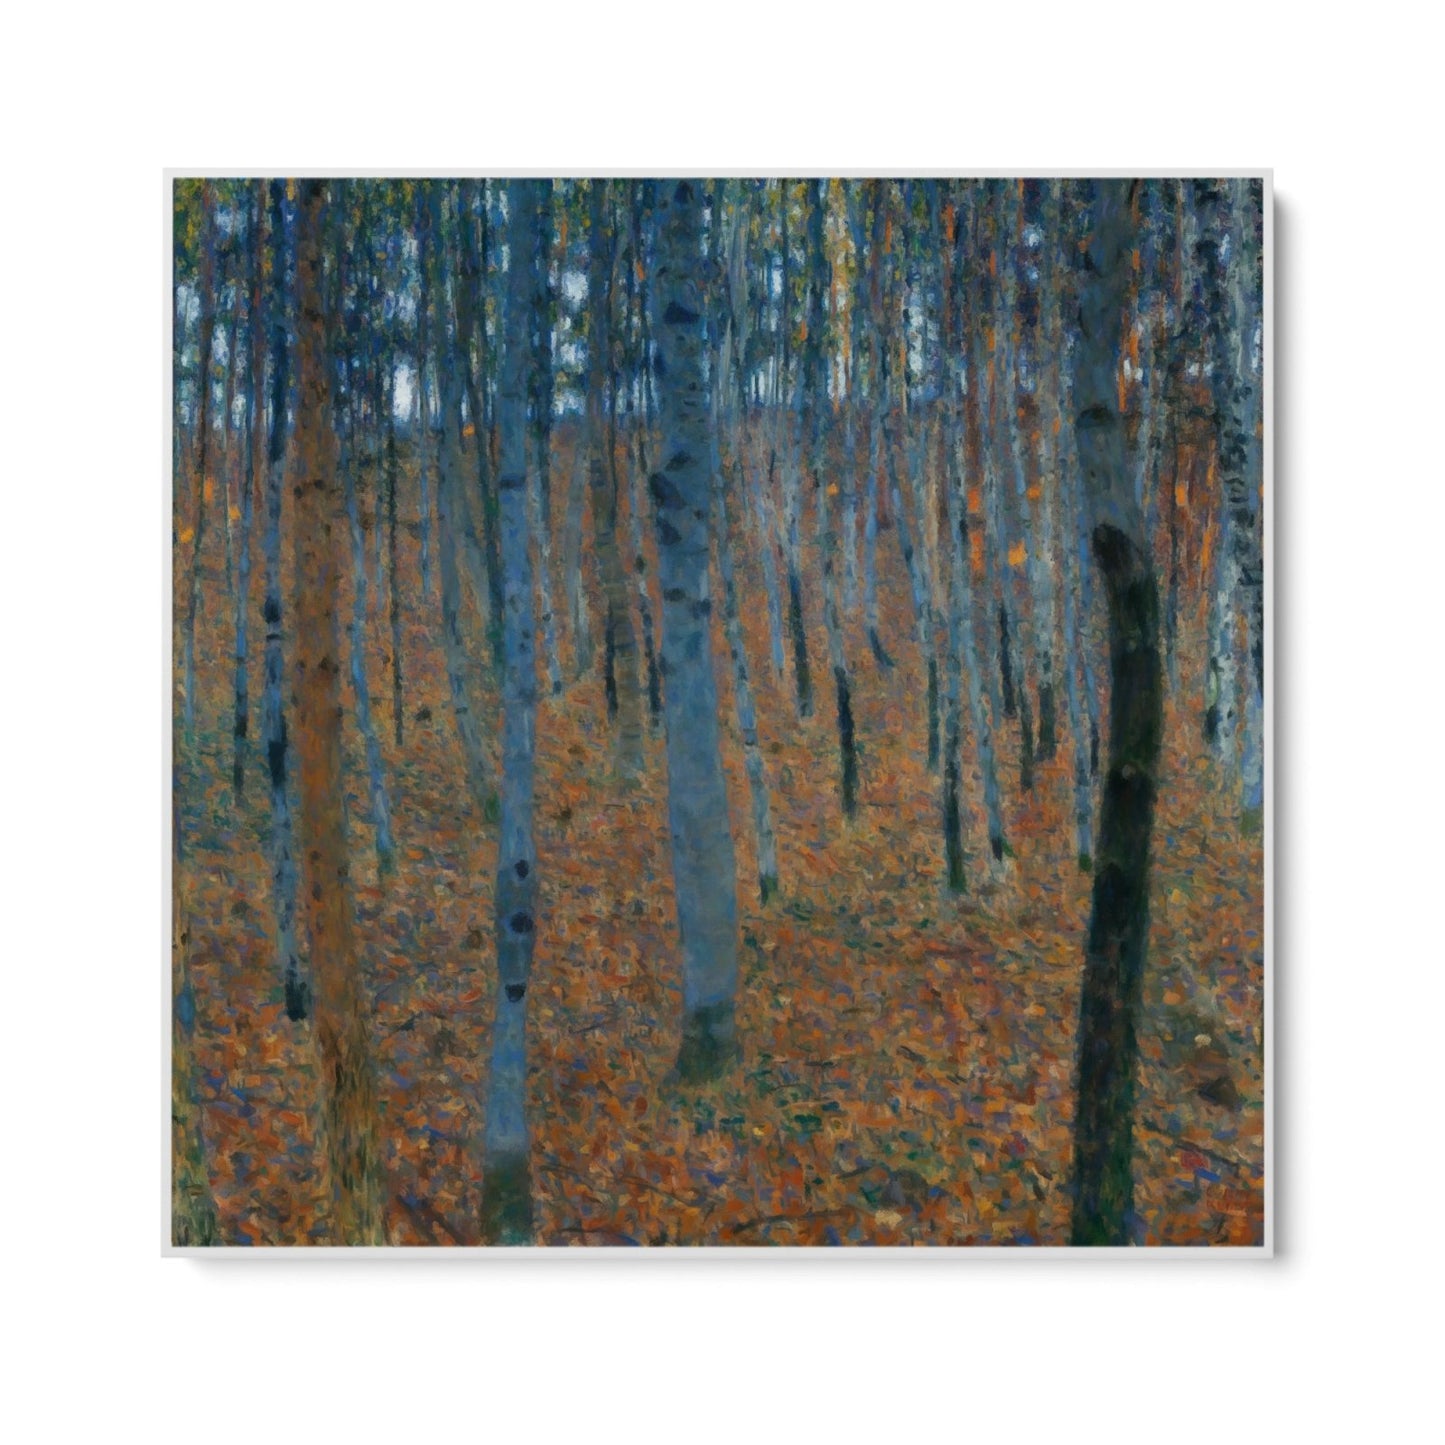 Δάσος σημύδων - Gustav Klimt